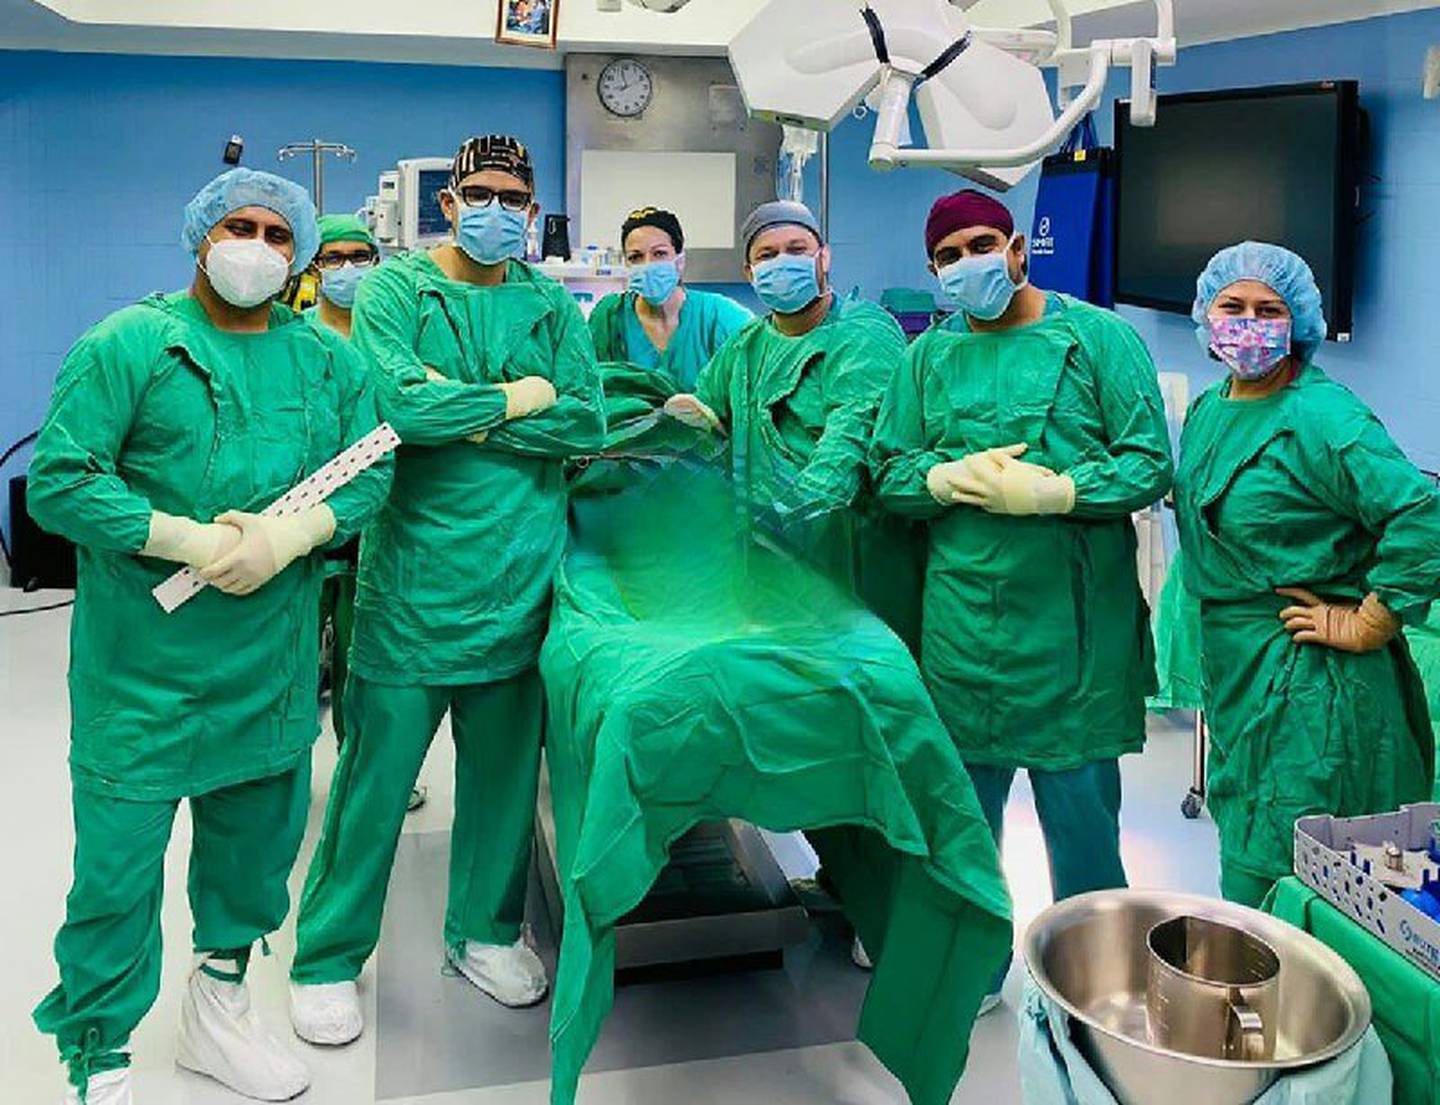 En el hospital Monseñor Sanabria de la Caja Costarricense de Seguro Social (CCSS), el equipo de ortopedistas logró llevar a cabo una cirugía novedosa utilizando la hemiprótesis bipolar para el reemplazo de cadera de una paciente